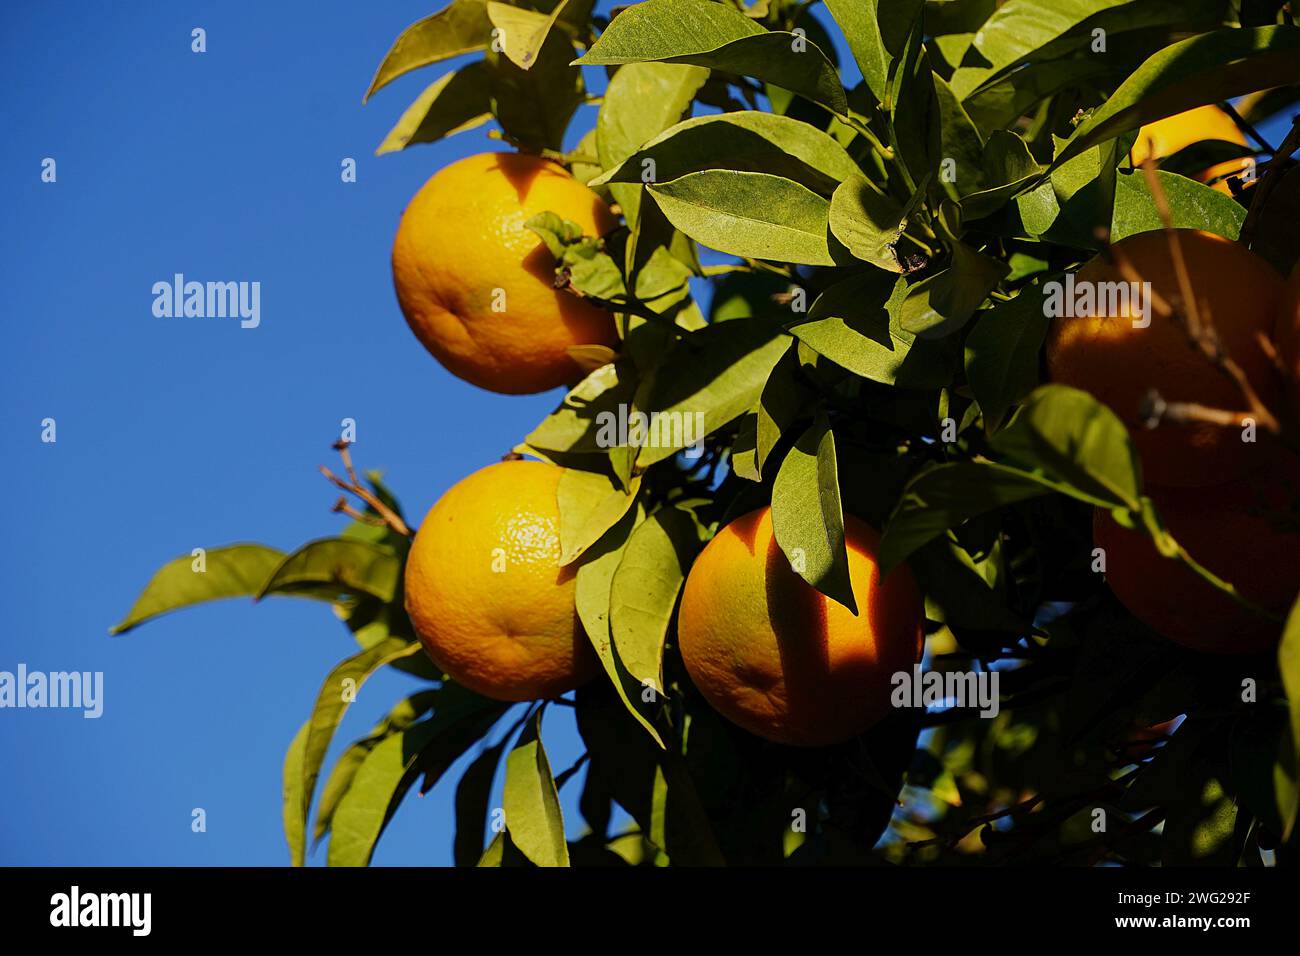 Bitter oranges, or Citrus aurantium, fruit on a tree Stock Photo